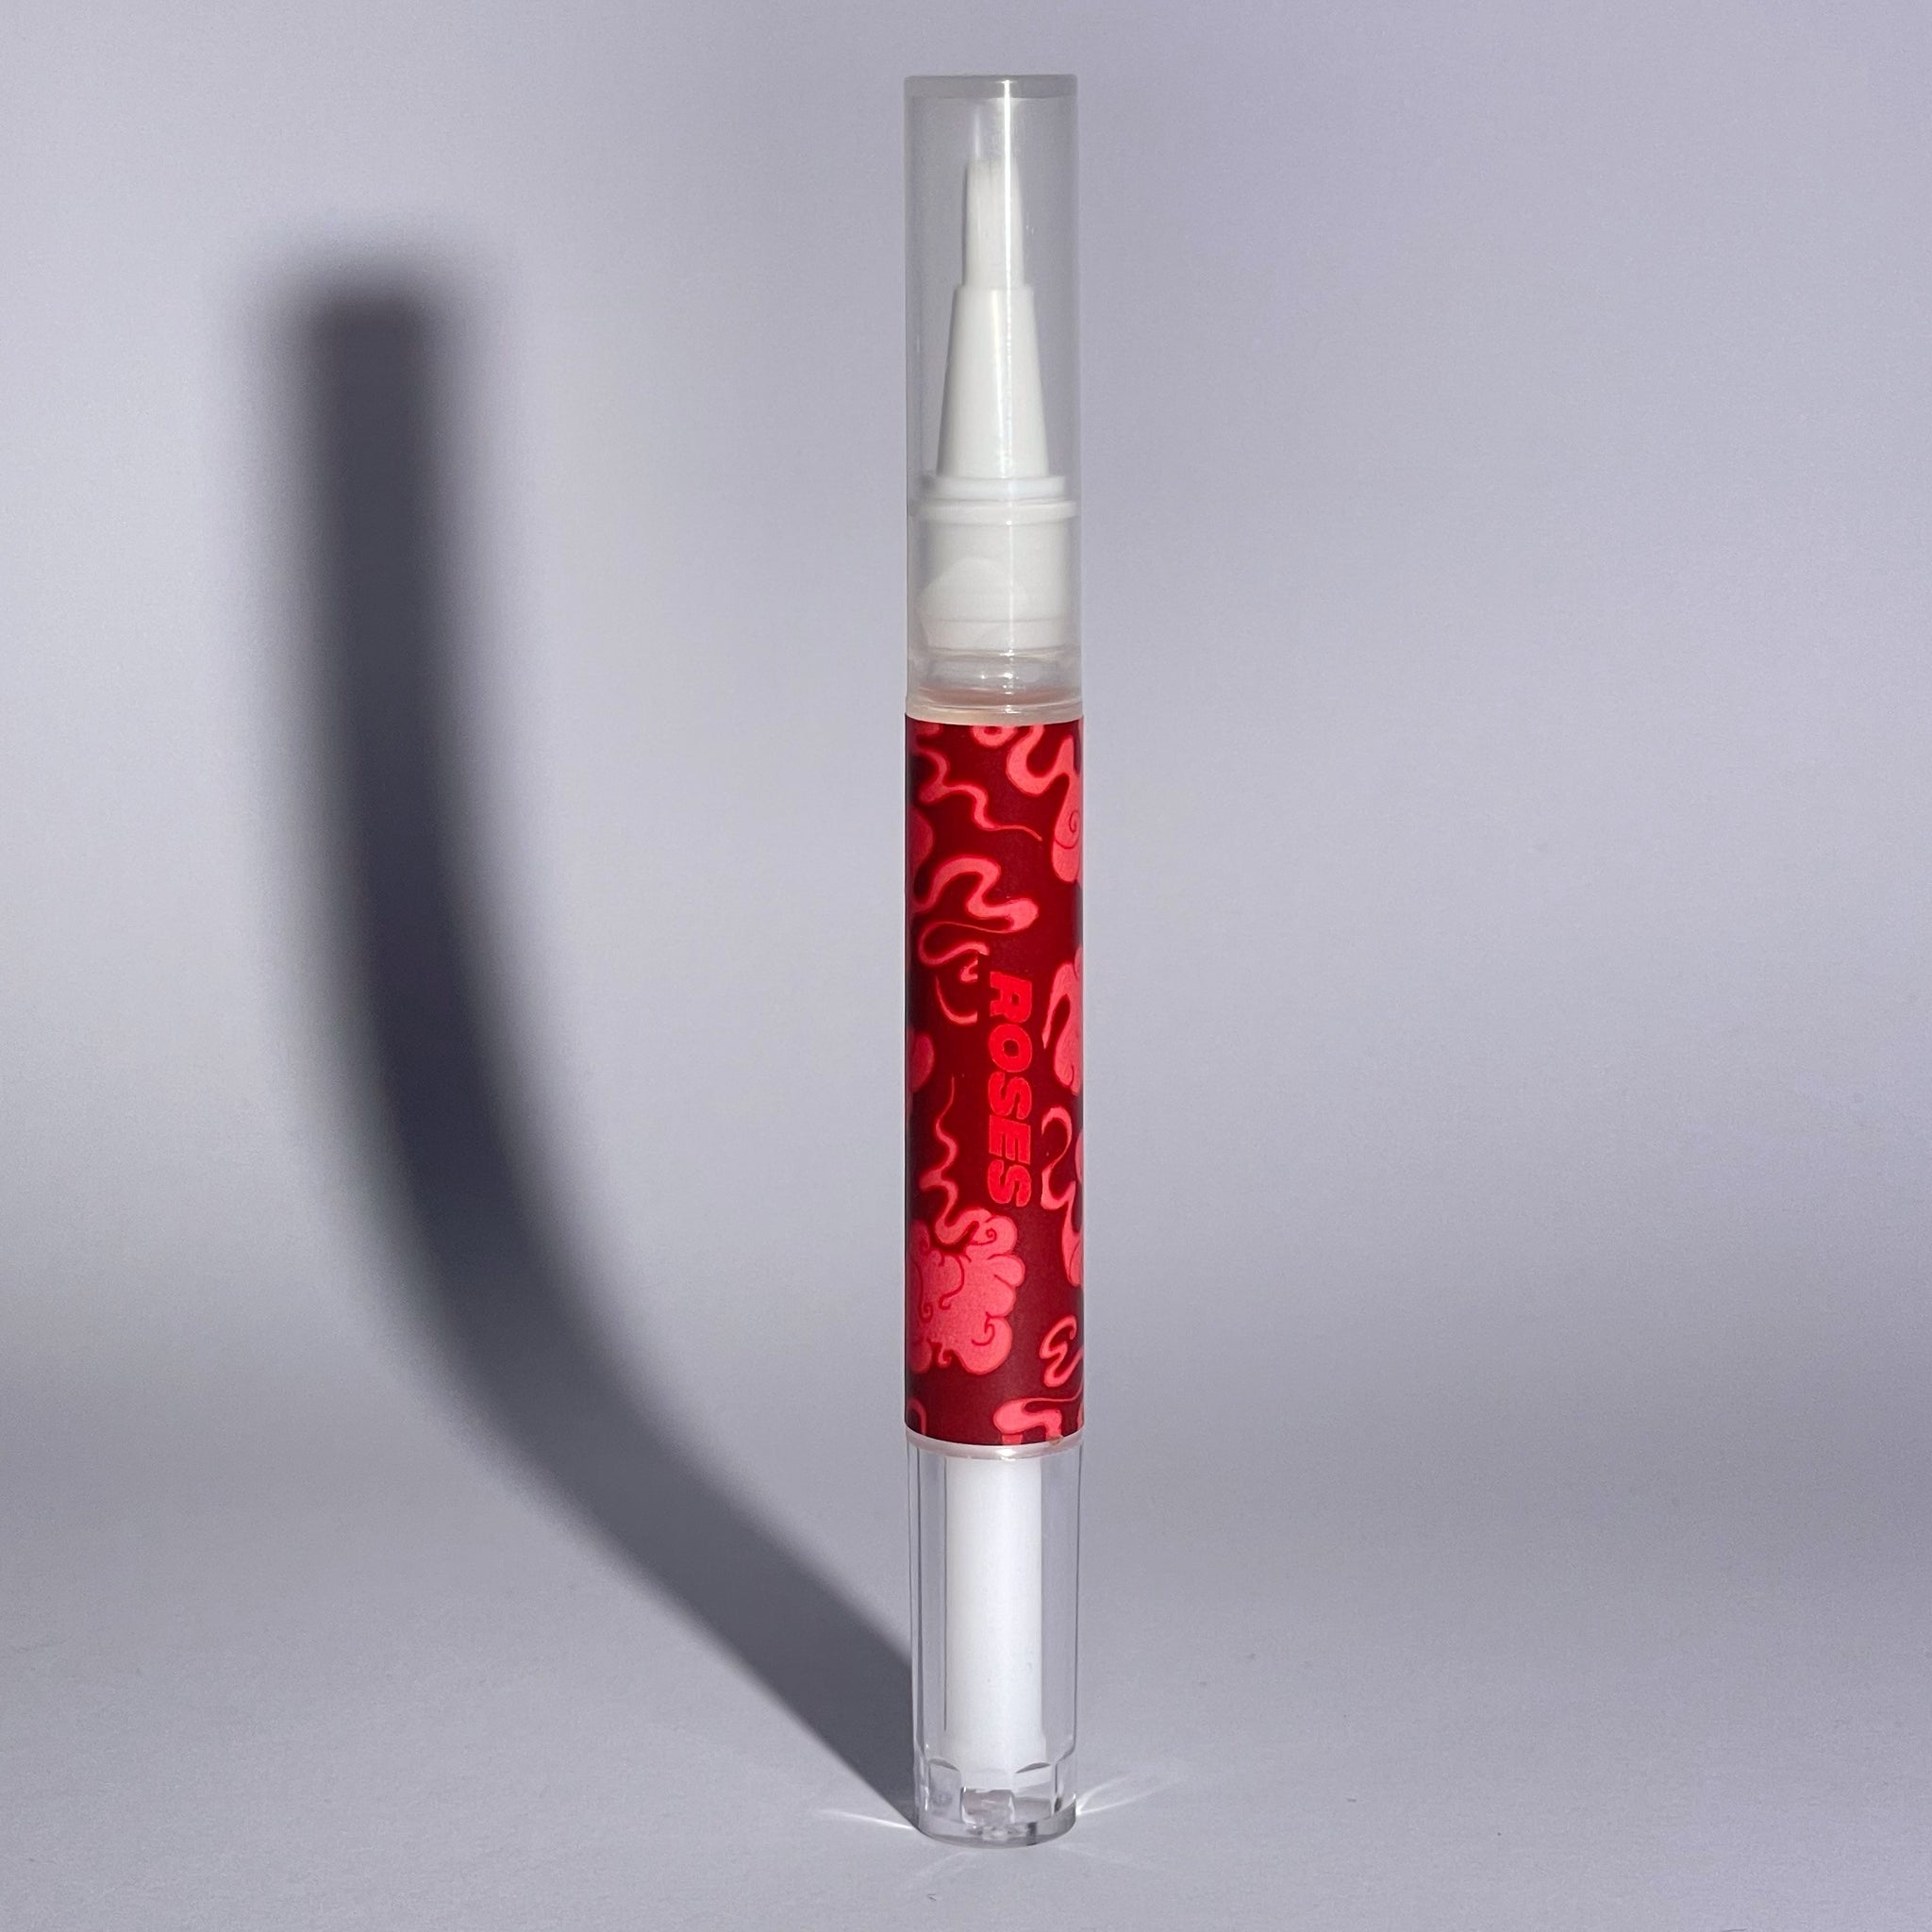 Roses Cuticle Oil Pen